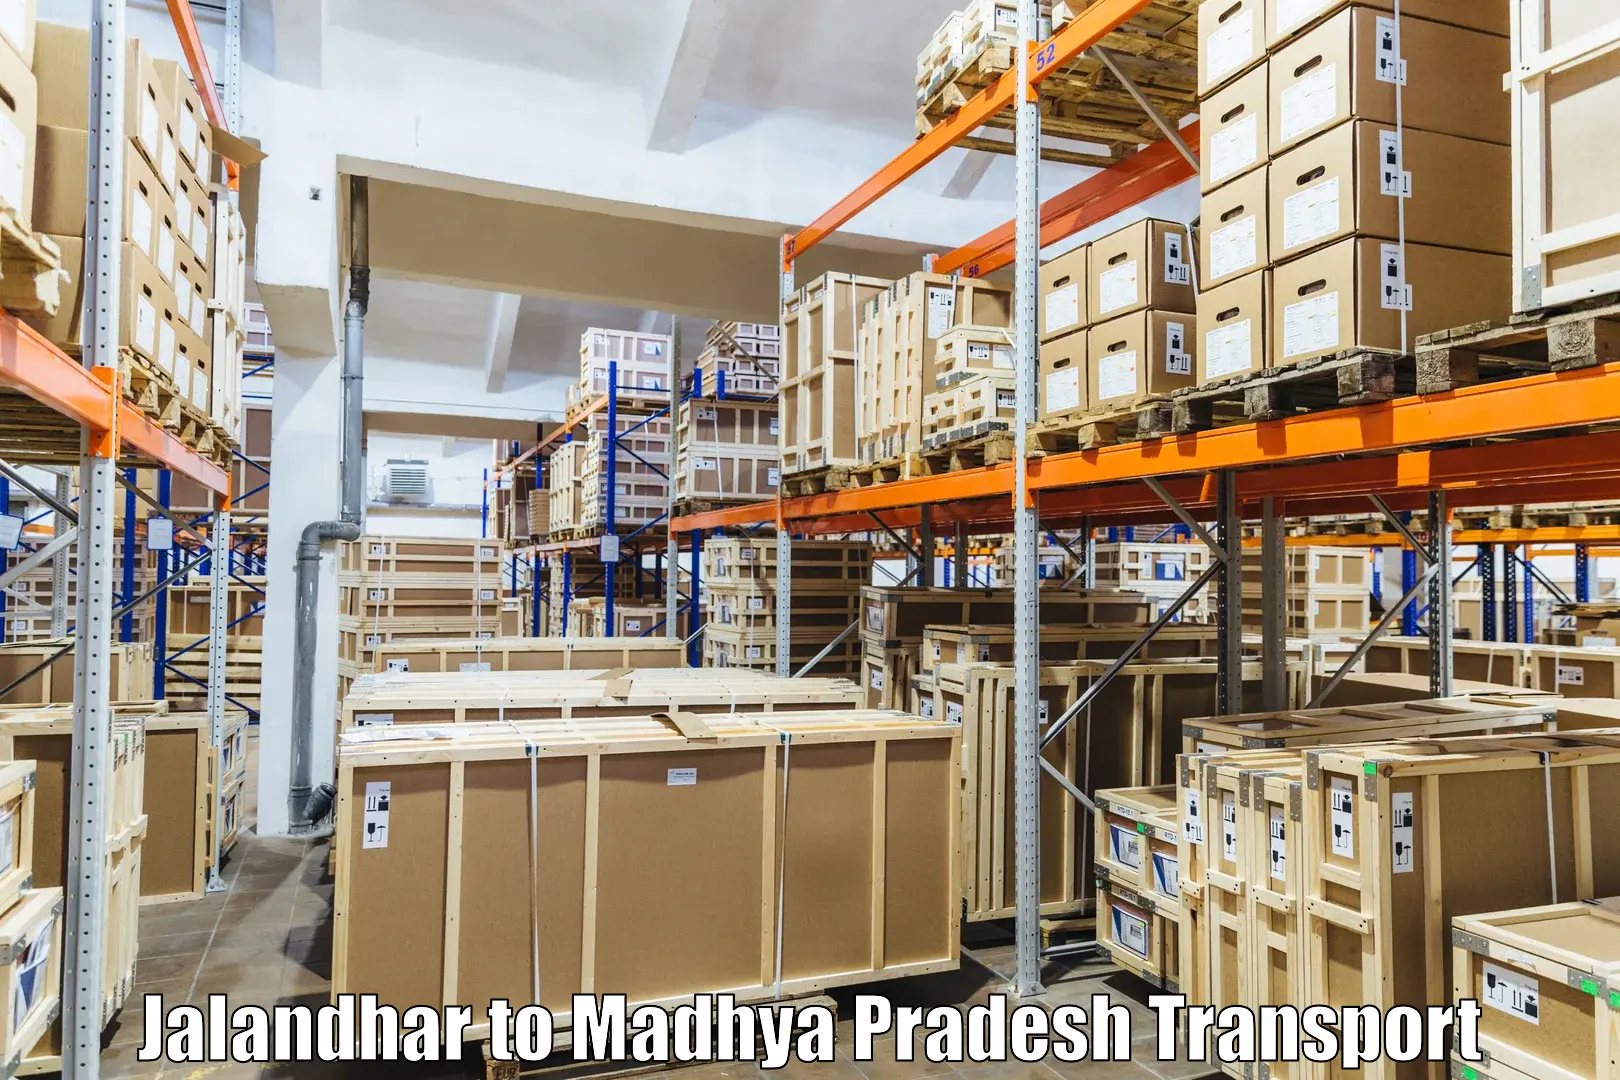 Furniture transport service Jalandhar to Petlawad